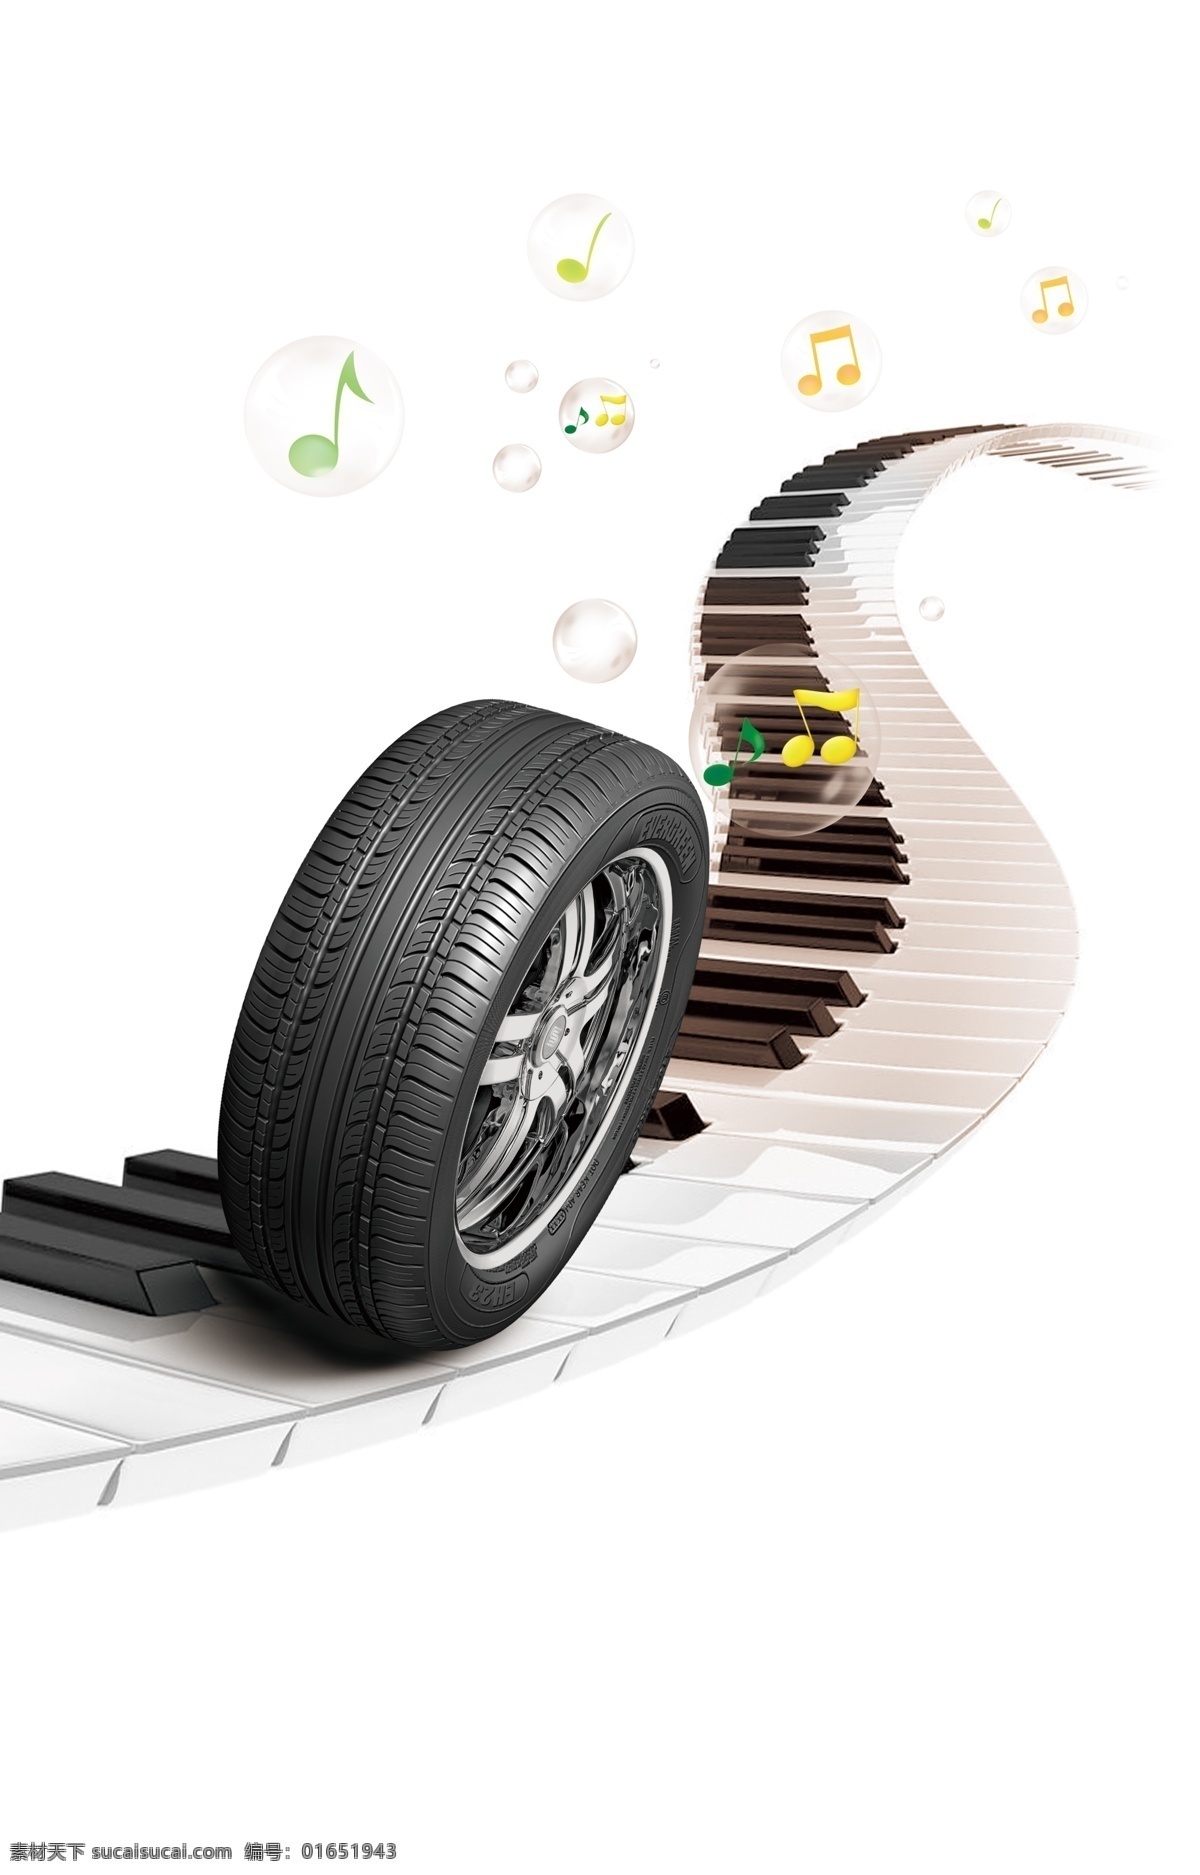 静音 轮胎 钢琴 广告设计模板 琴键 舒适 源文件 静音轮胎 其他海报设计